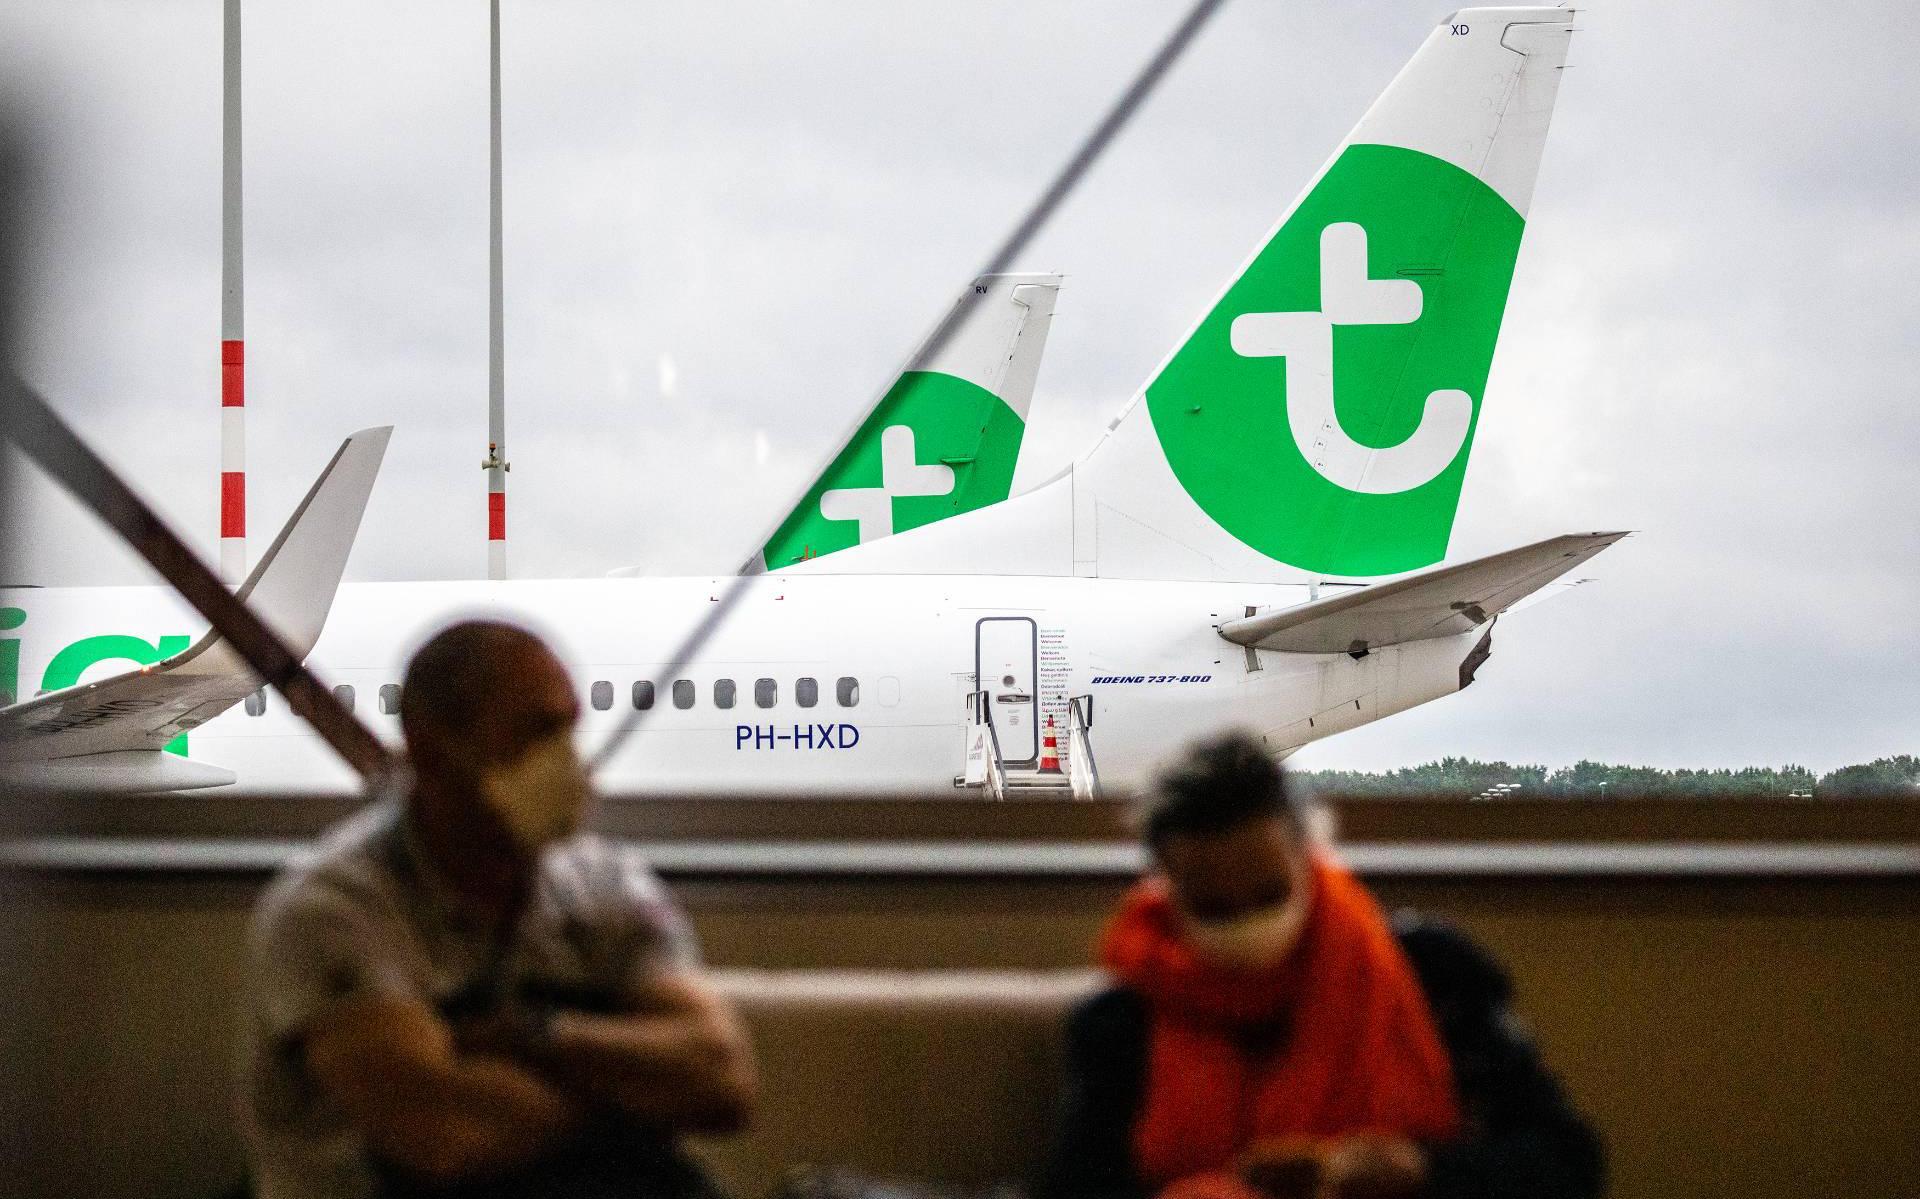 Boete voor weigeren mondkapje in vliegtuig Transavia